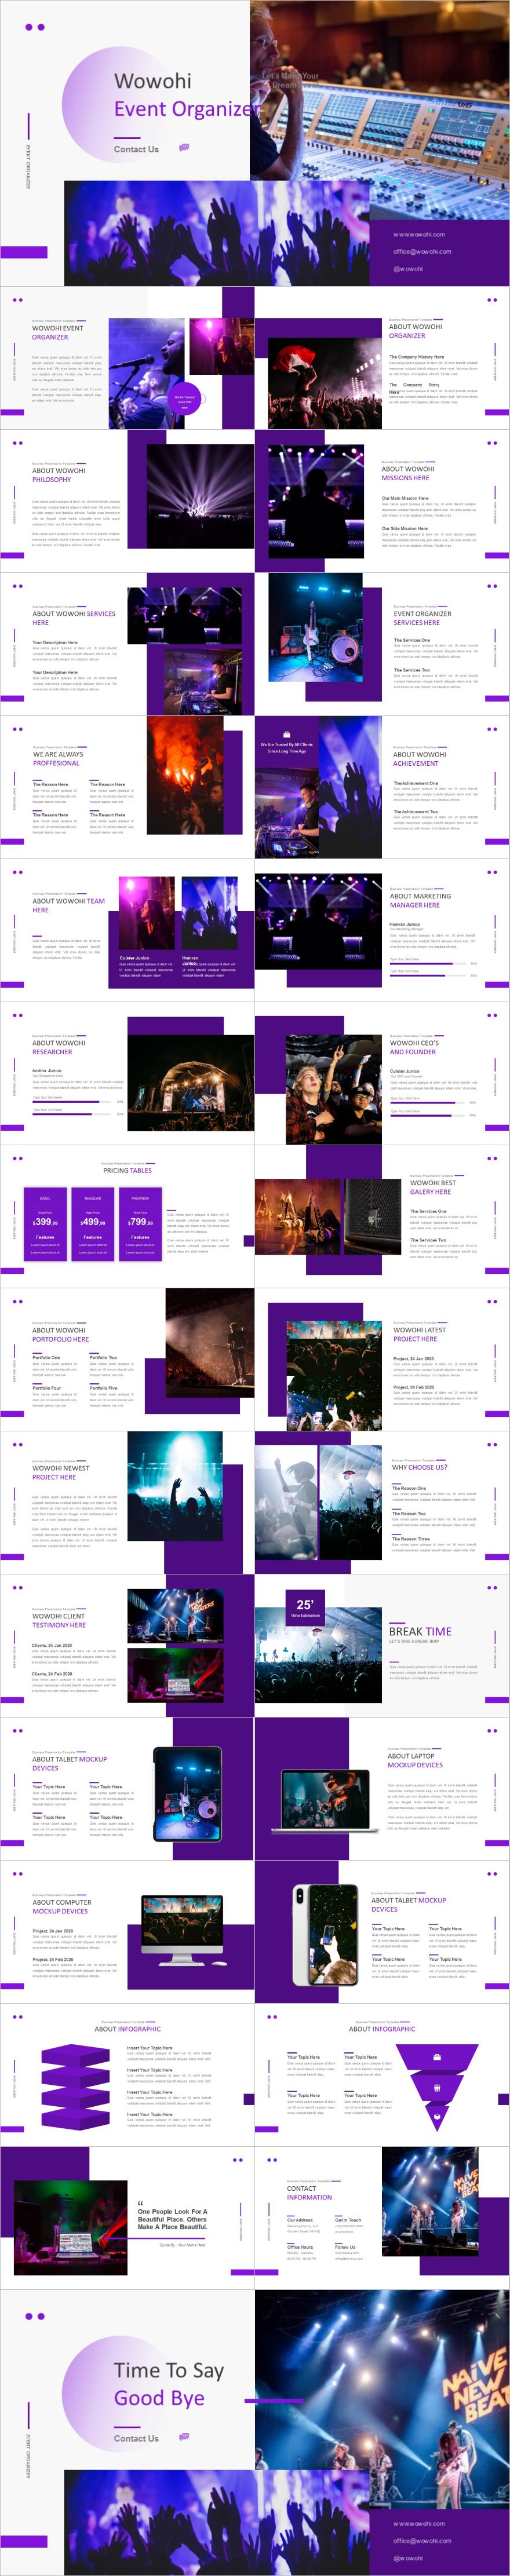 紫色杂志风音乐活动介绍PPT模板下载